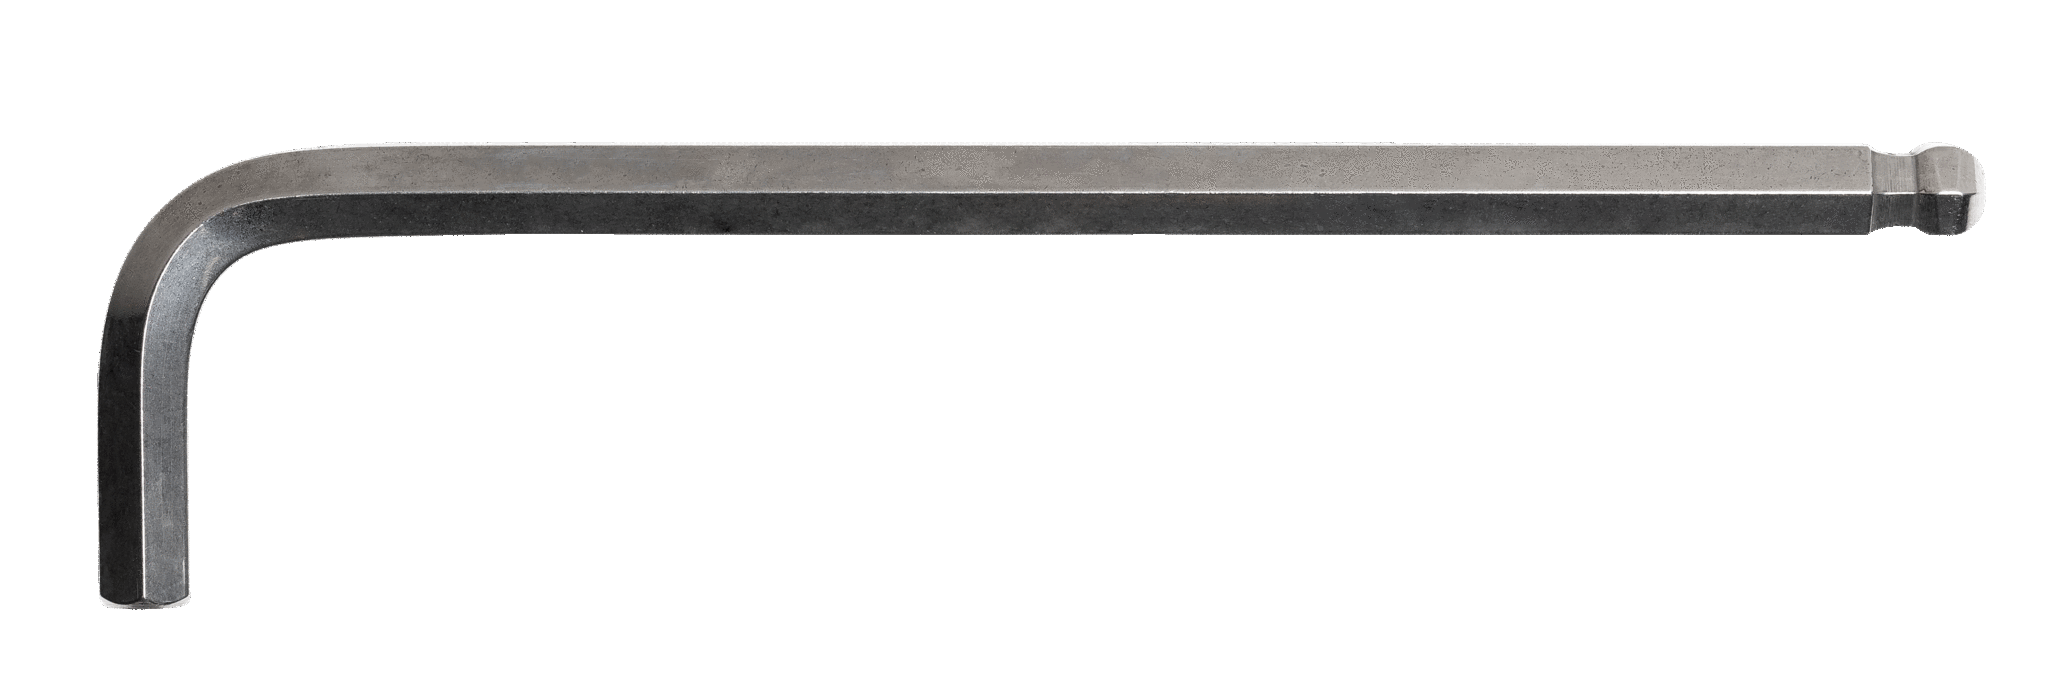 Удлиненный Г-образный шестигранник с шаровым наконечником из нержавеющей стали, дюймы BAHCO SS325-3.5